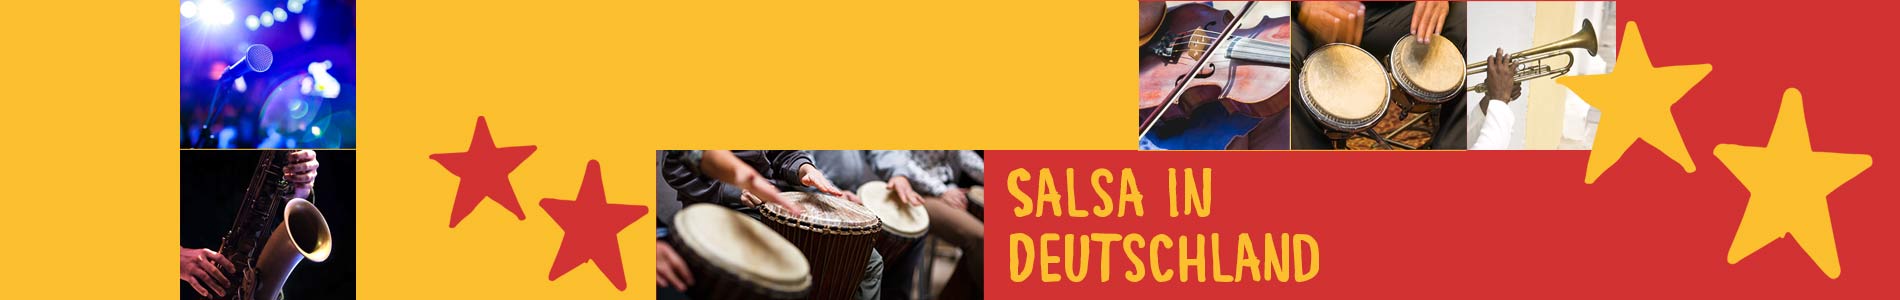 Salsa in Chamerau – Salsa lernen und tanzen, Tanzkurse, Partys, Veranstaltungen